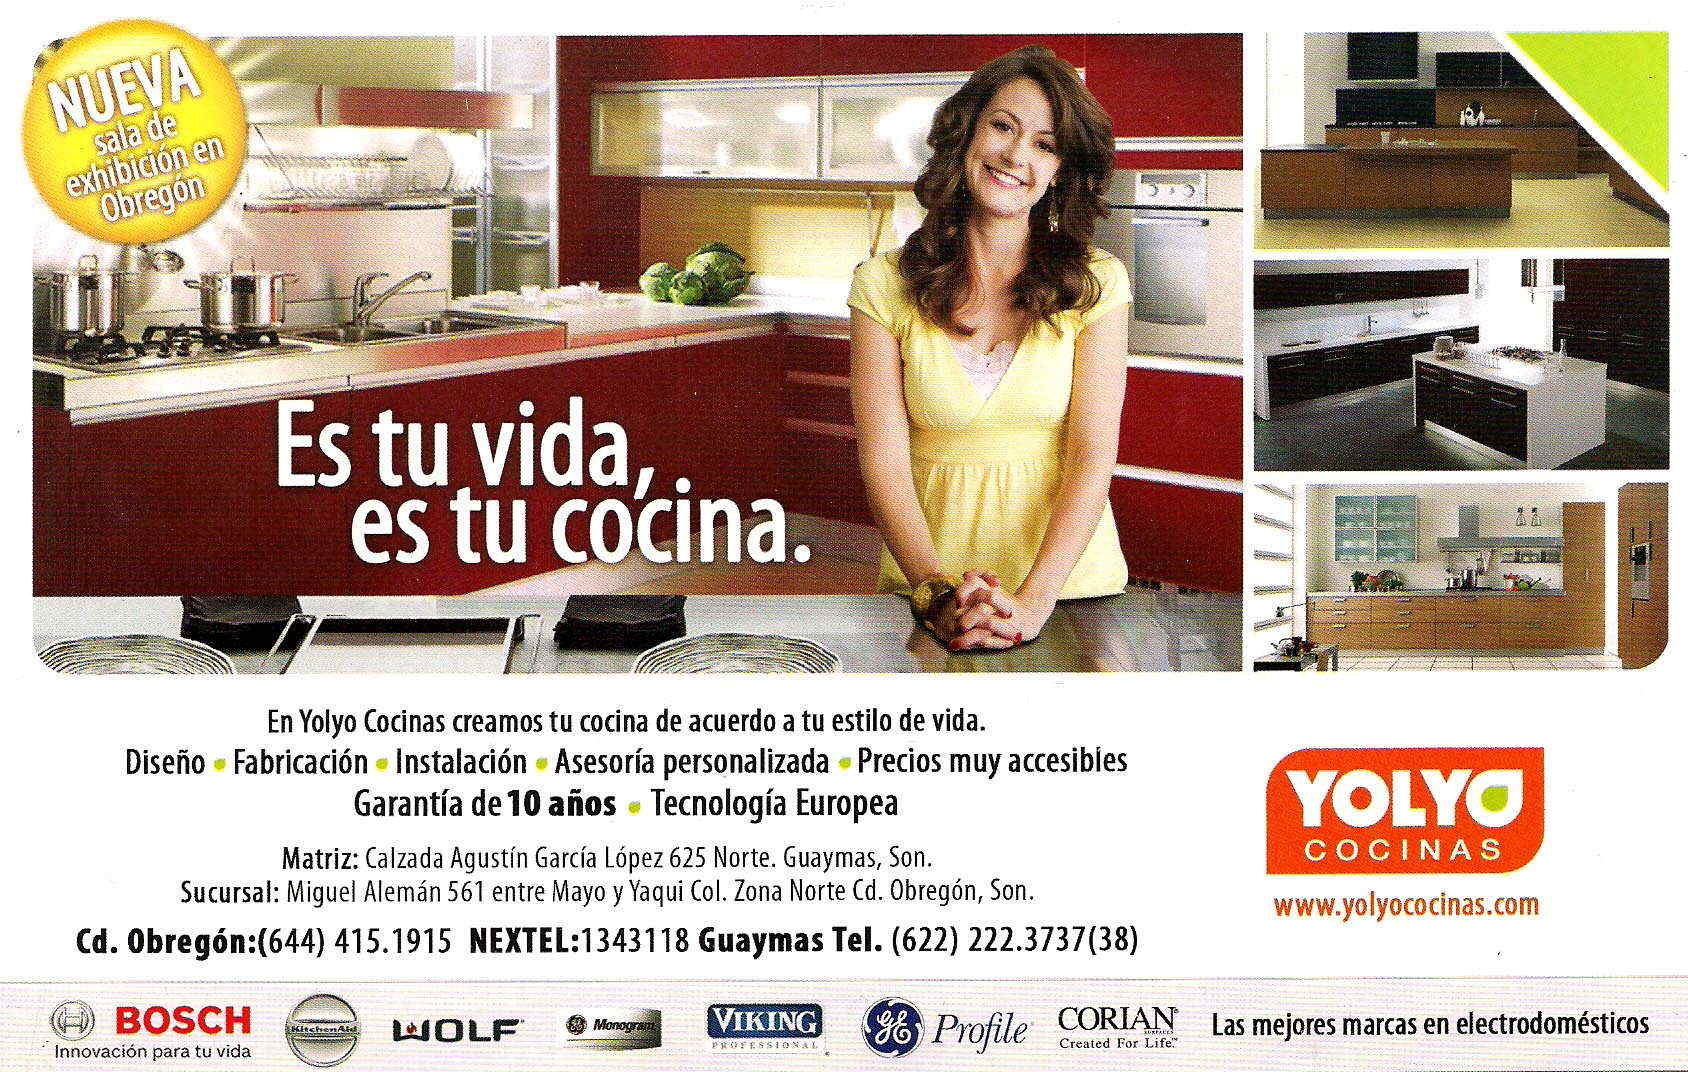 Yolyo Cocinas-En Yolyo Cocinas creamos tu cocina de acuerdo a tu estilo de vida.